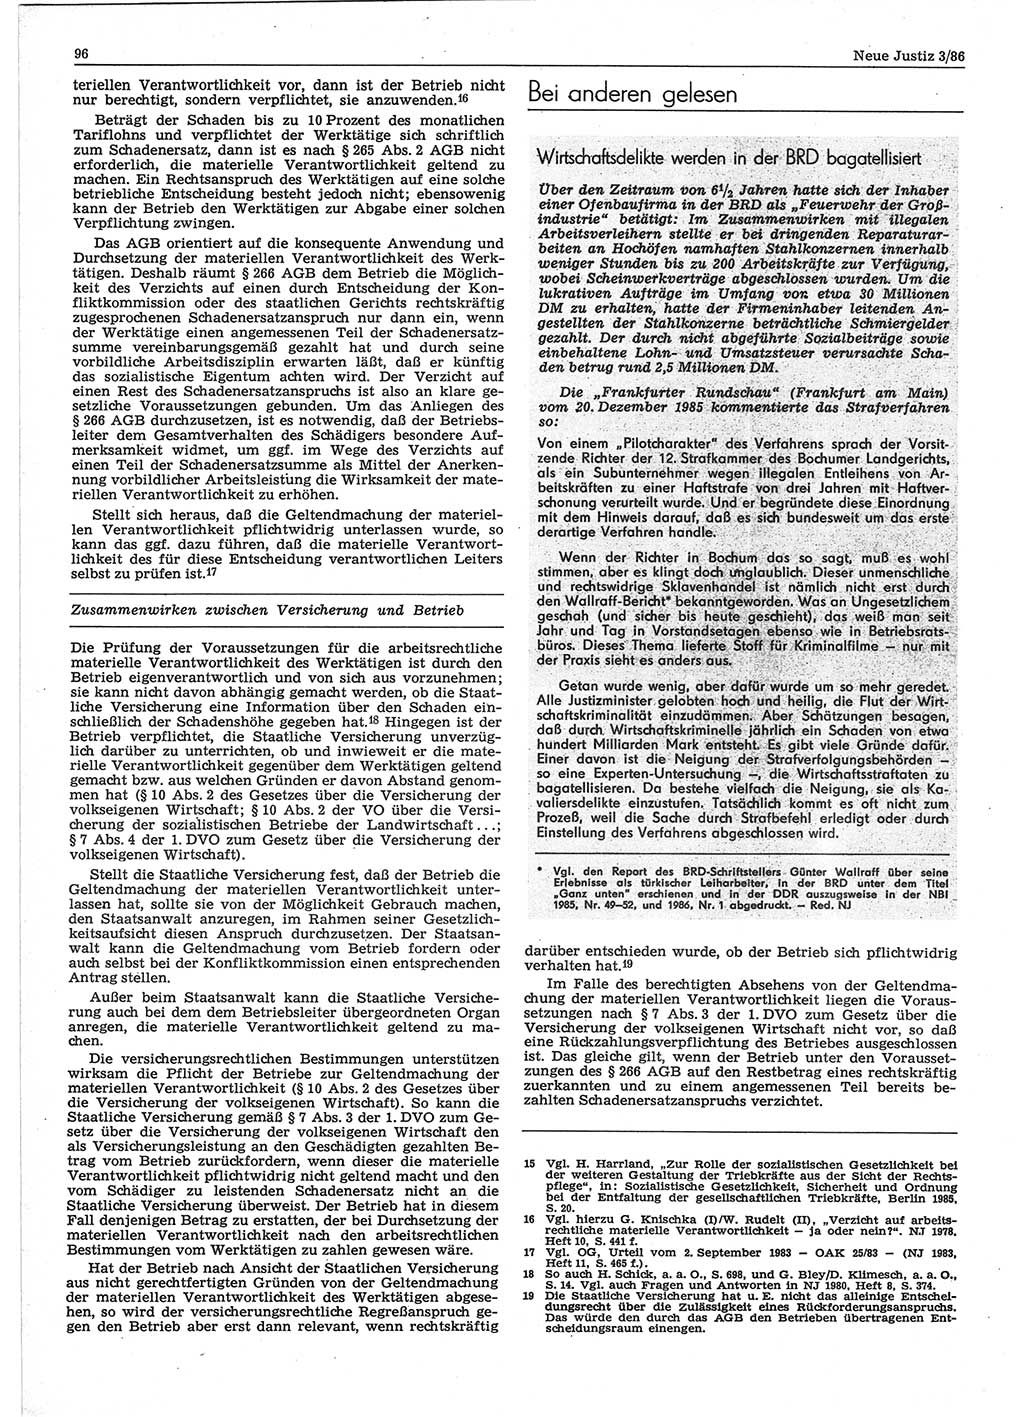 Neue Justiz (NJ), Zeitschrift für sozialistisches Recht und Gesetzlichkeit [Deutsche Demokratische Republik (DDR)], 40. Jahrgang 1986, Seite 96 (NJ DDR 1986, S. 96)